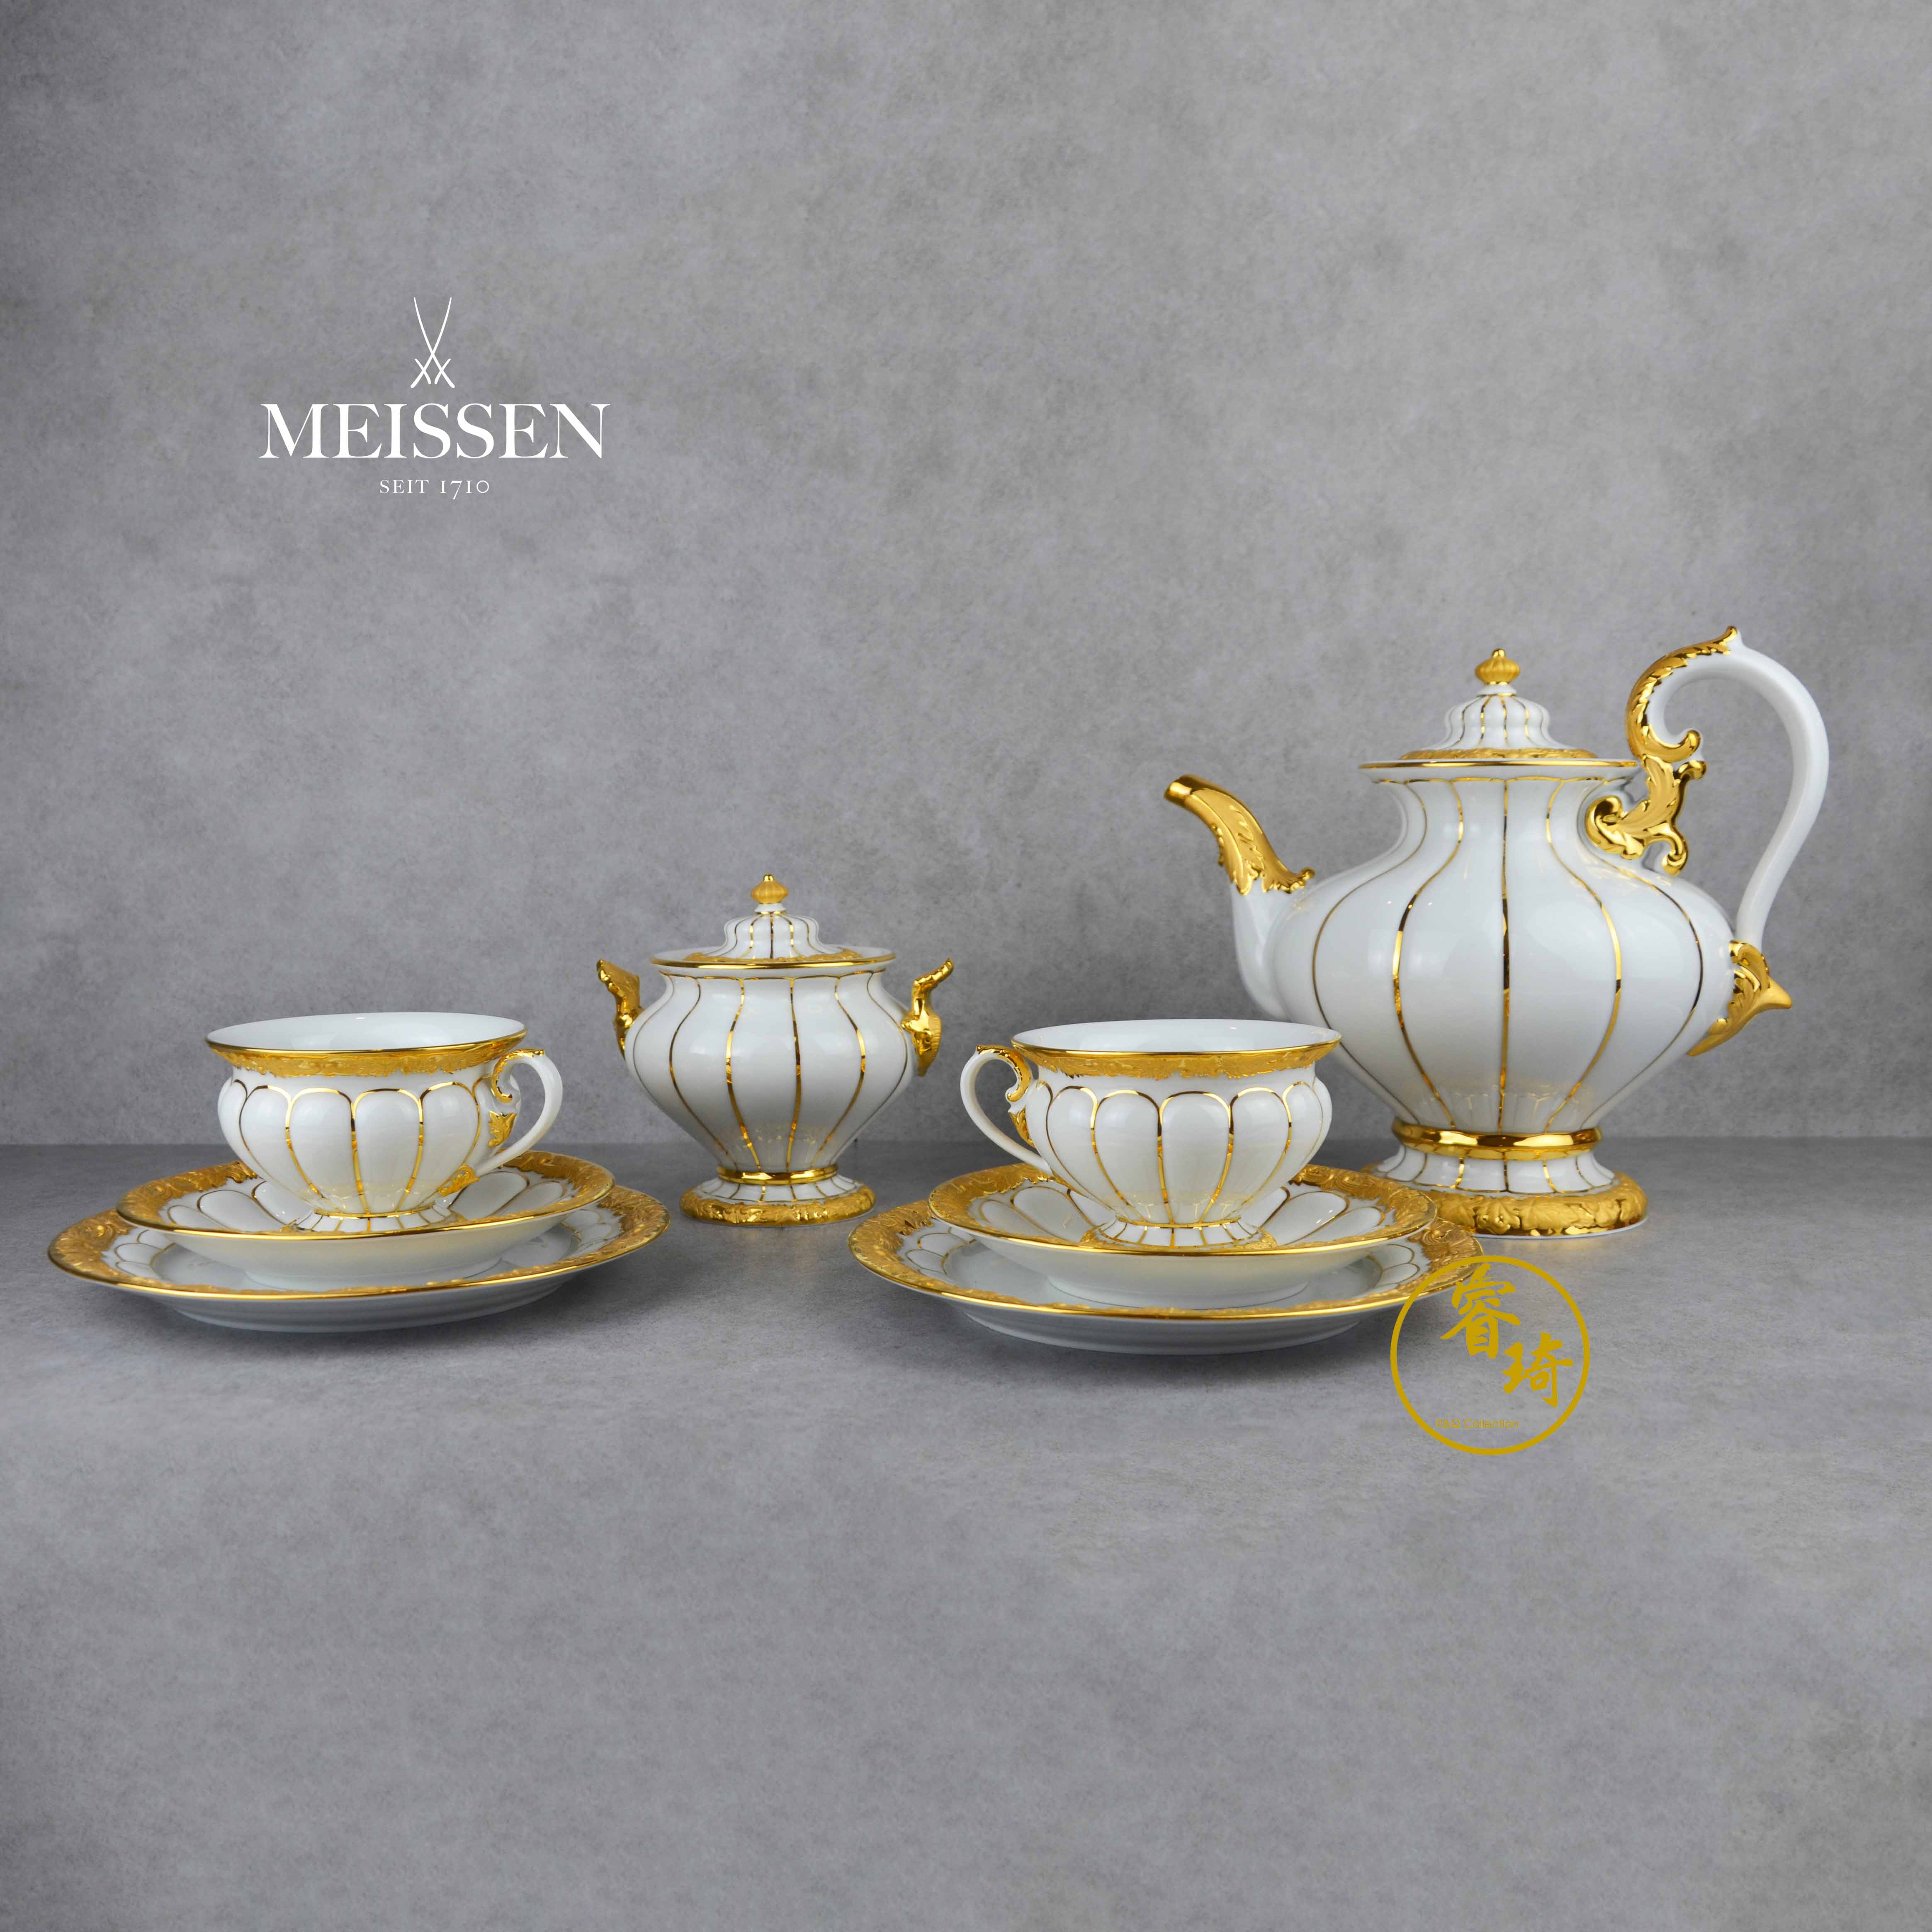 睿琦☆德国梅森 meissen x-form系列 纯白绘金 双人咖啡具套装